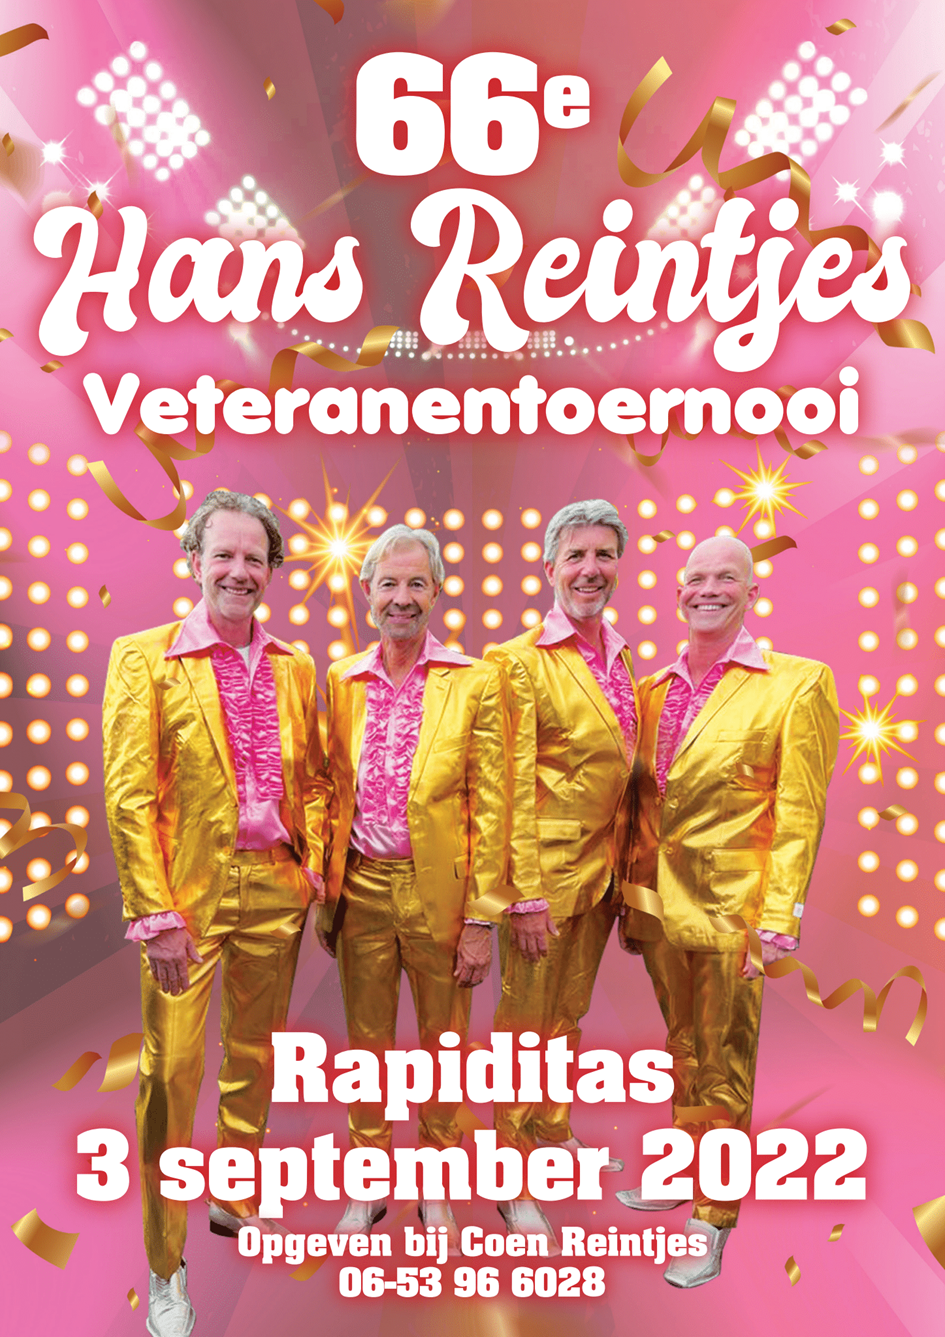 66e Hans Reintjes Veteranentoernooi poster A3.png